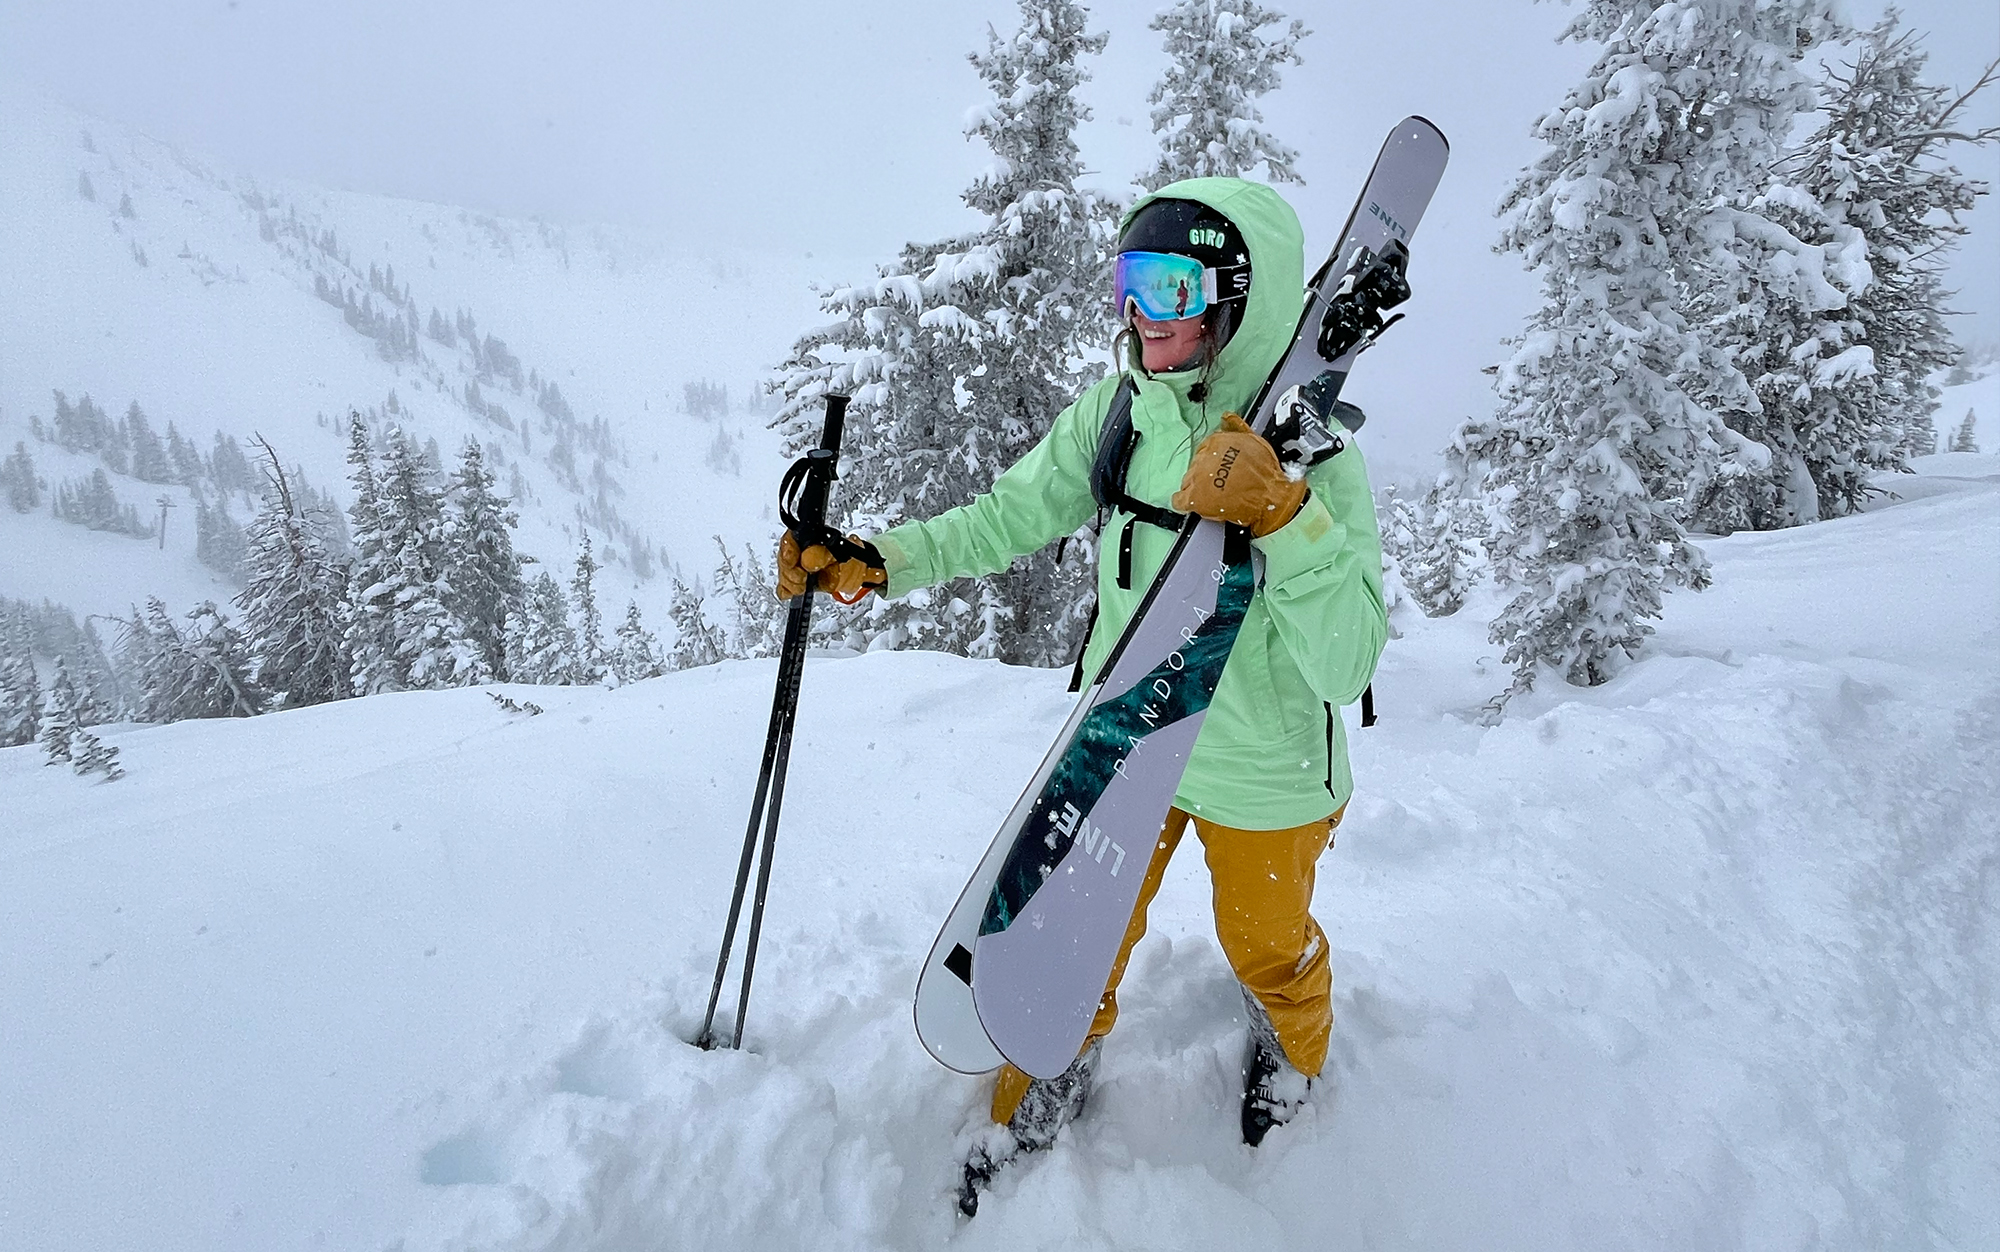 Women's Vector Mountain Queen Insulated Overalls Bib Snow Pants